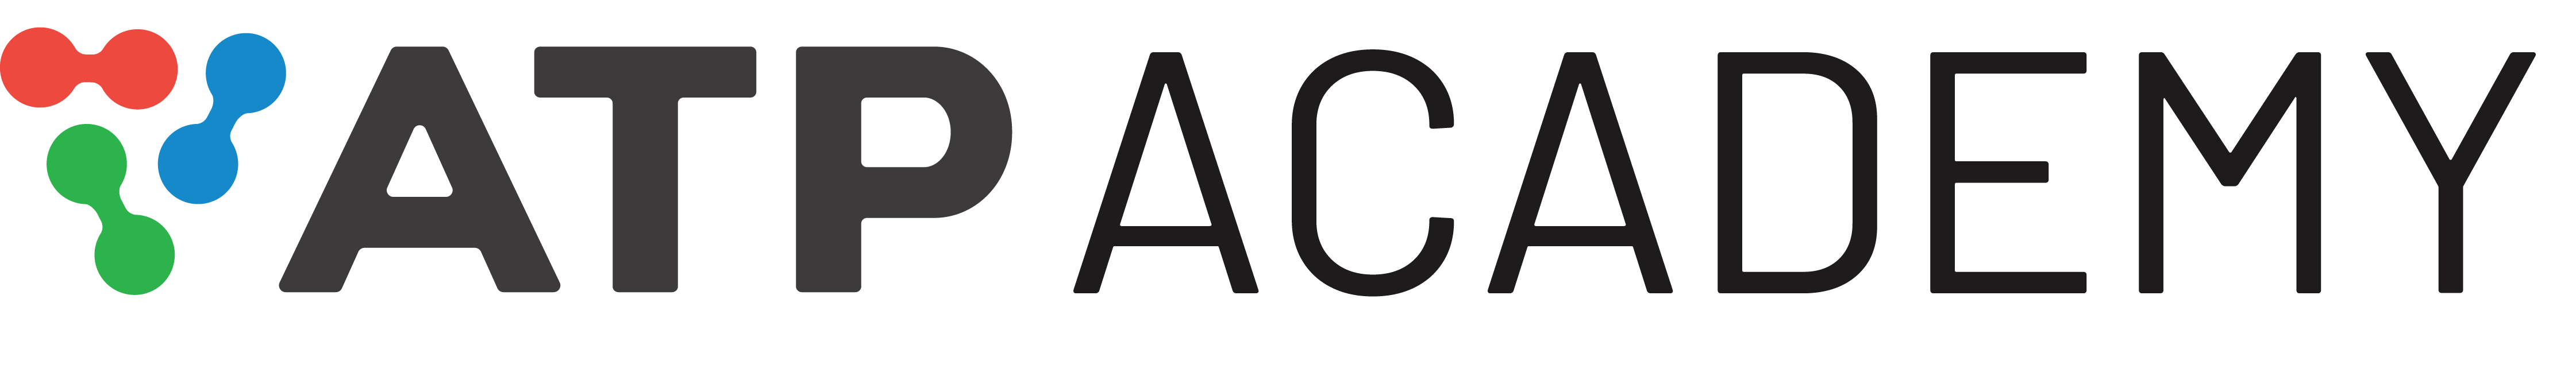 ATP Academy Logo - Horizontal